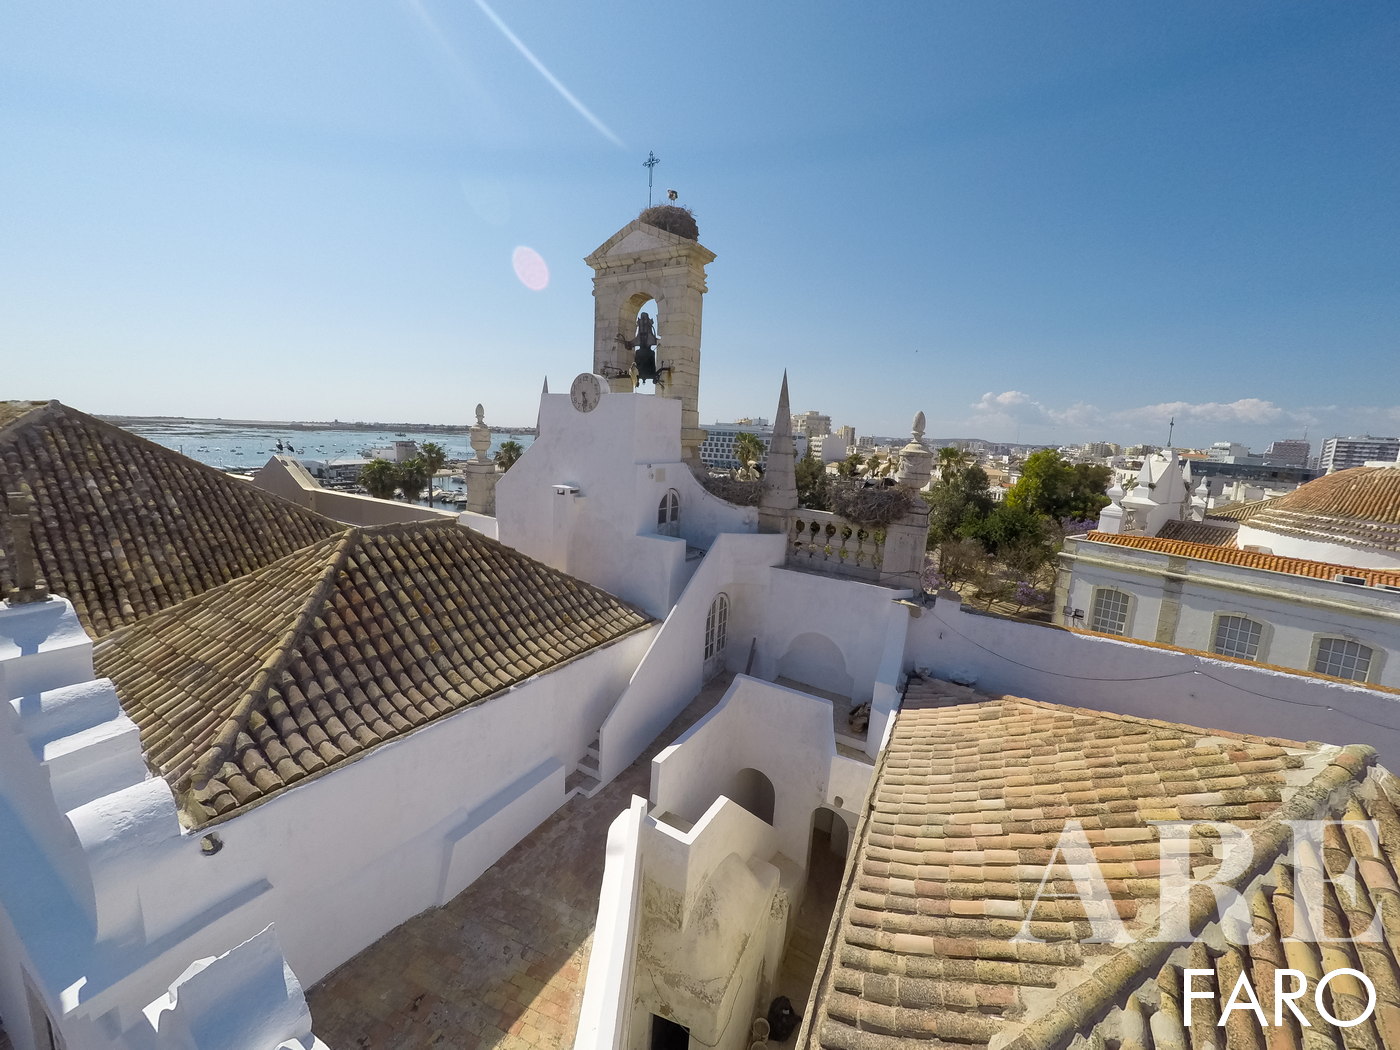 Vista aérea dos encantadores telhados de terracota da zona histórica de Faro, revelando a pitoresca e histórica paisagem urbana desta joia algarvia.